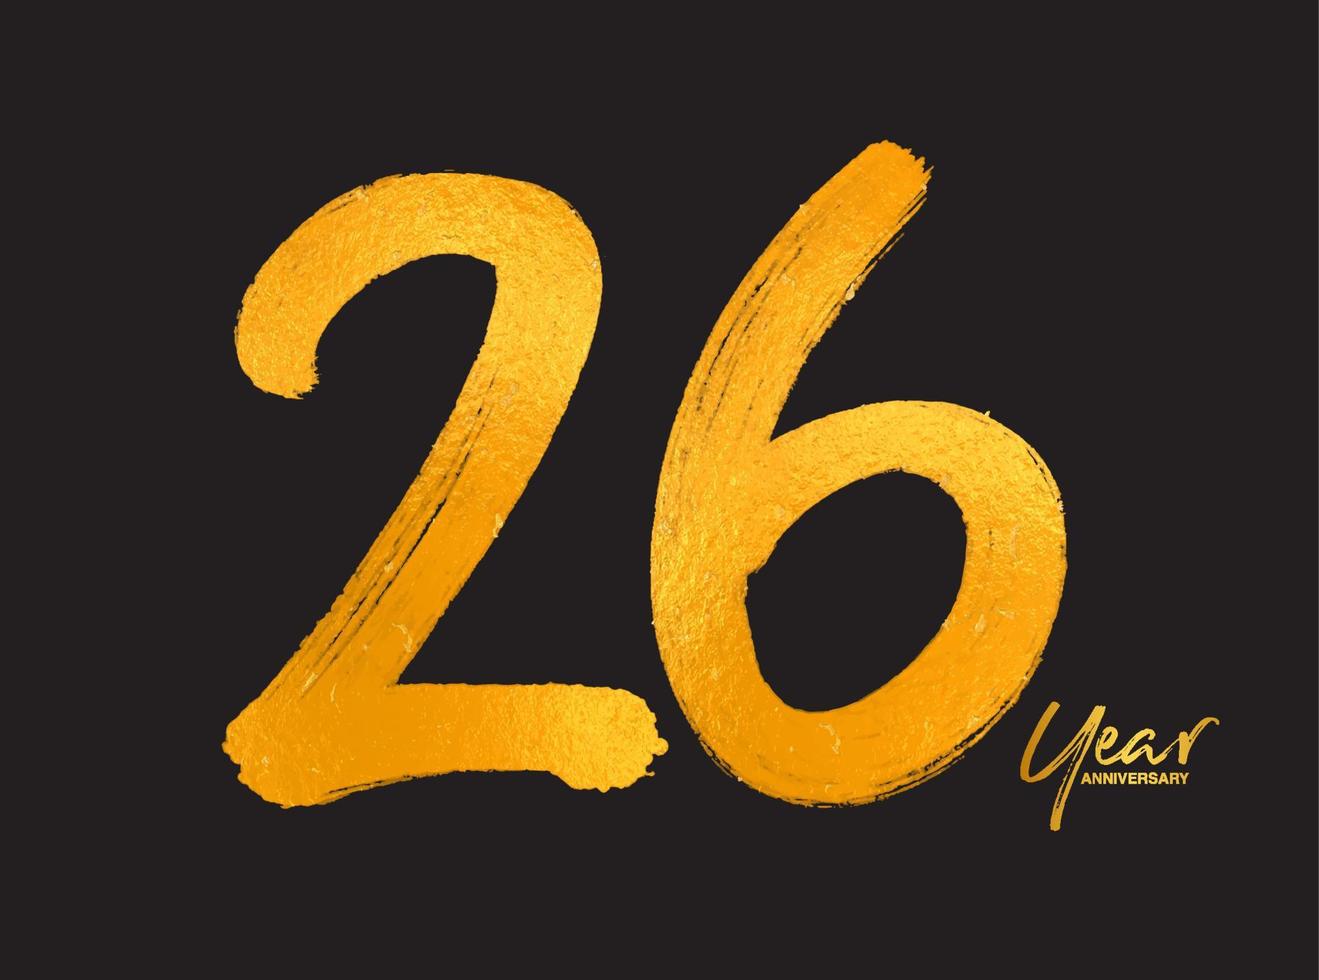 guld 26 års jubileumsfirande vektormall, 26 år logotypdesign, 26-årsdag, guldbokstäver siffror borstteckning handritad skiss, nummerlogotypdesign vektorillustration vektor